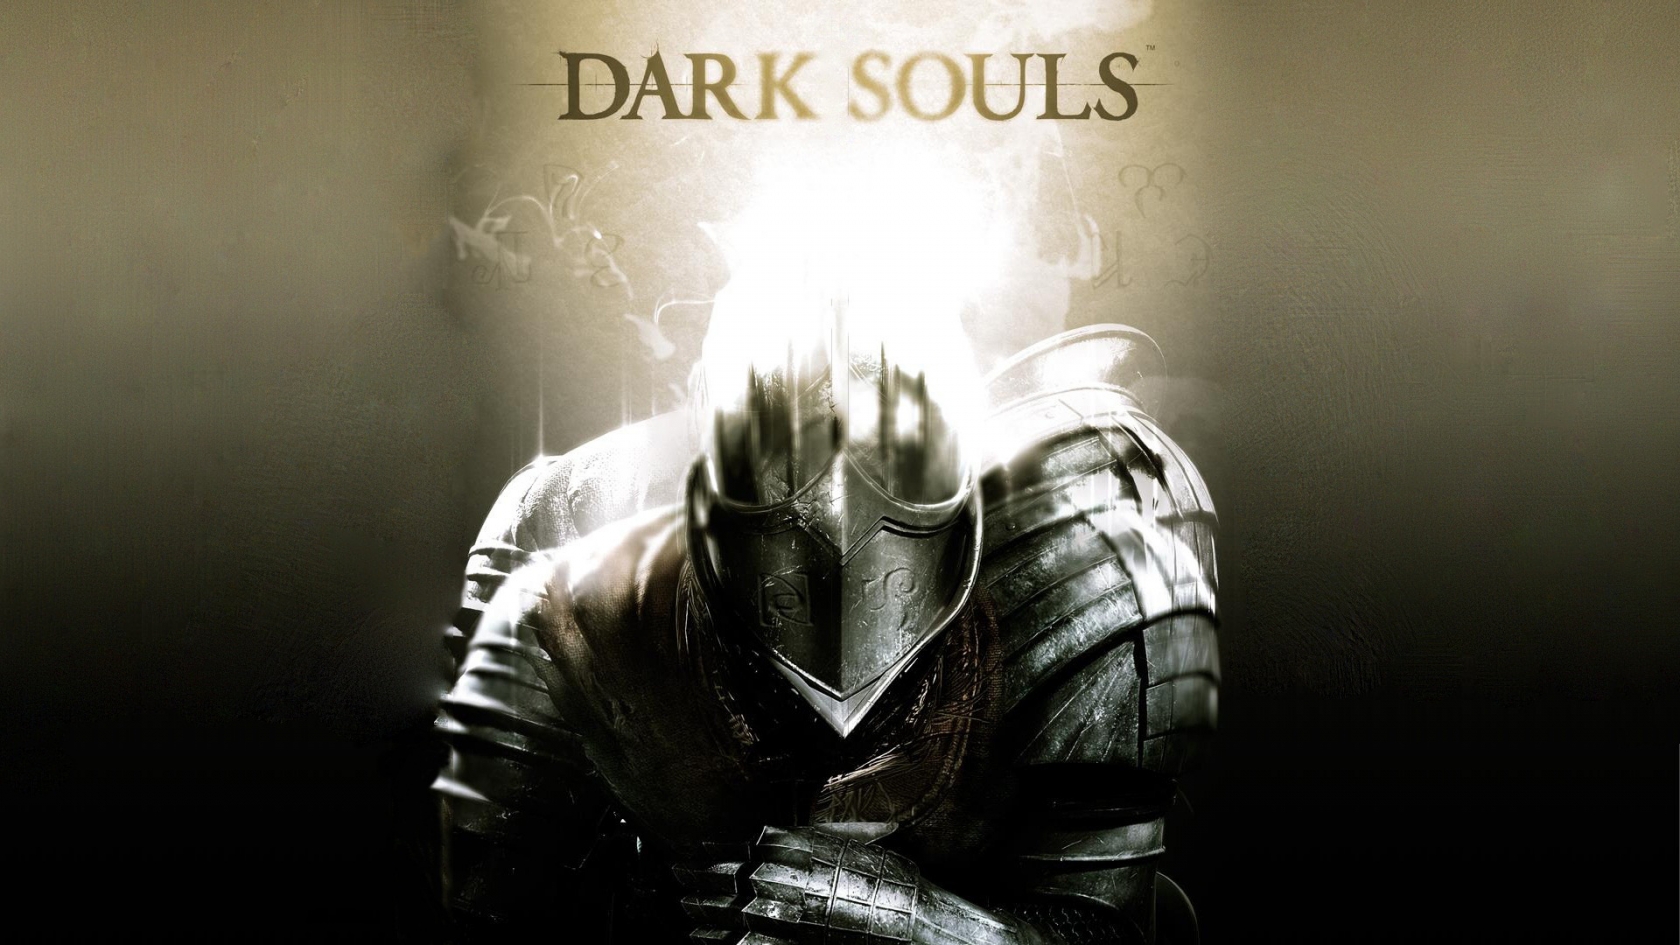 Dark Souls Poster for 1680 x 945 HDTV resolution